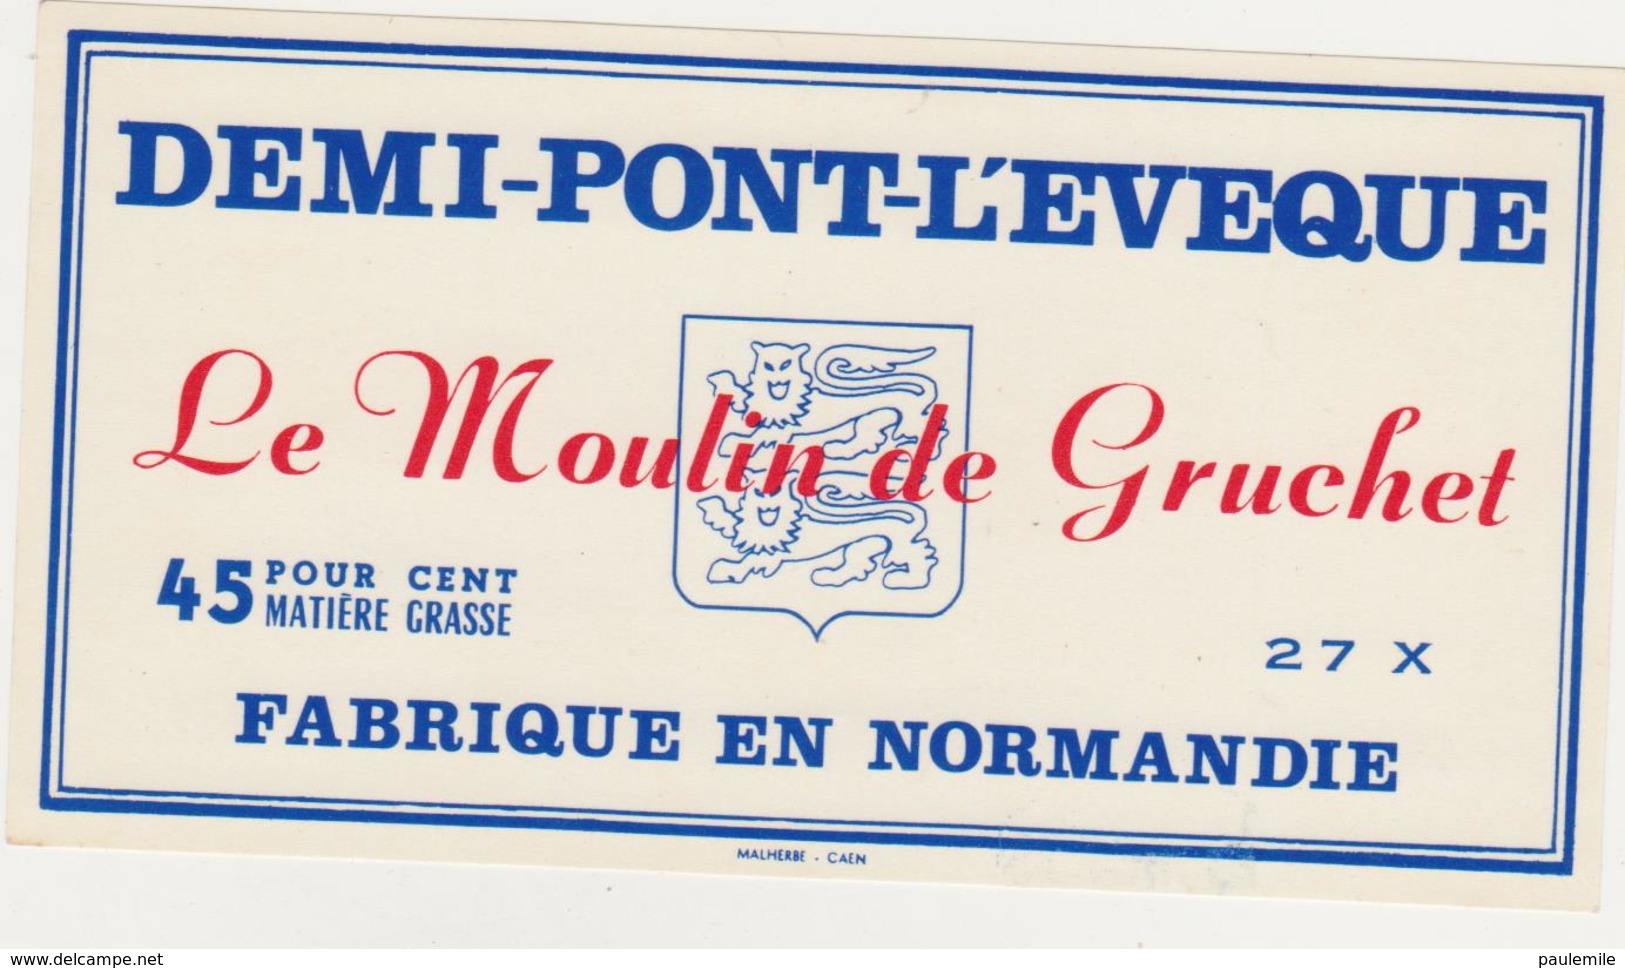 ETIQUETTE DE DEMI PONT L EVEQUE FAB. PAR 27 X LE MOULIN DE GRUCHET - Fromage